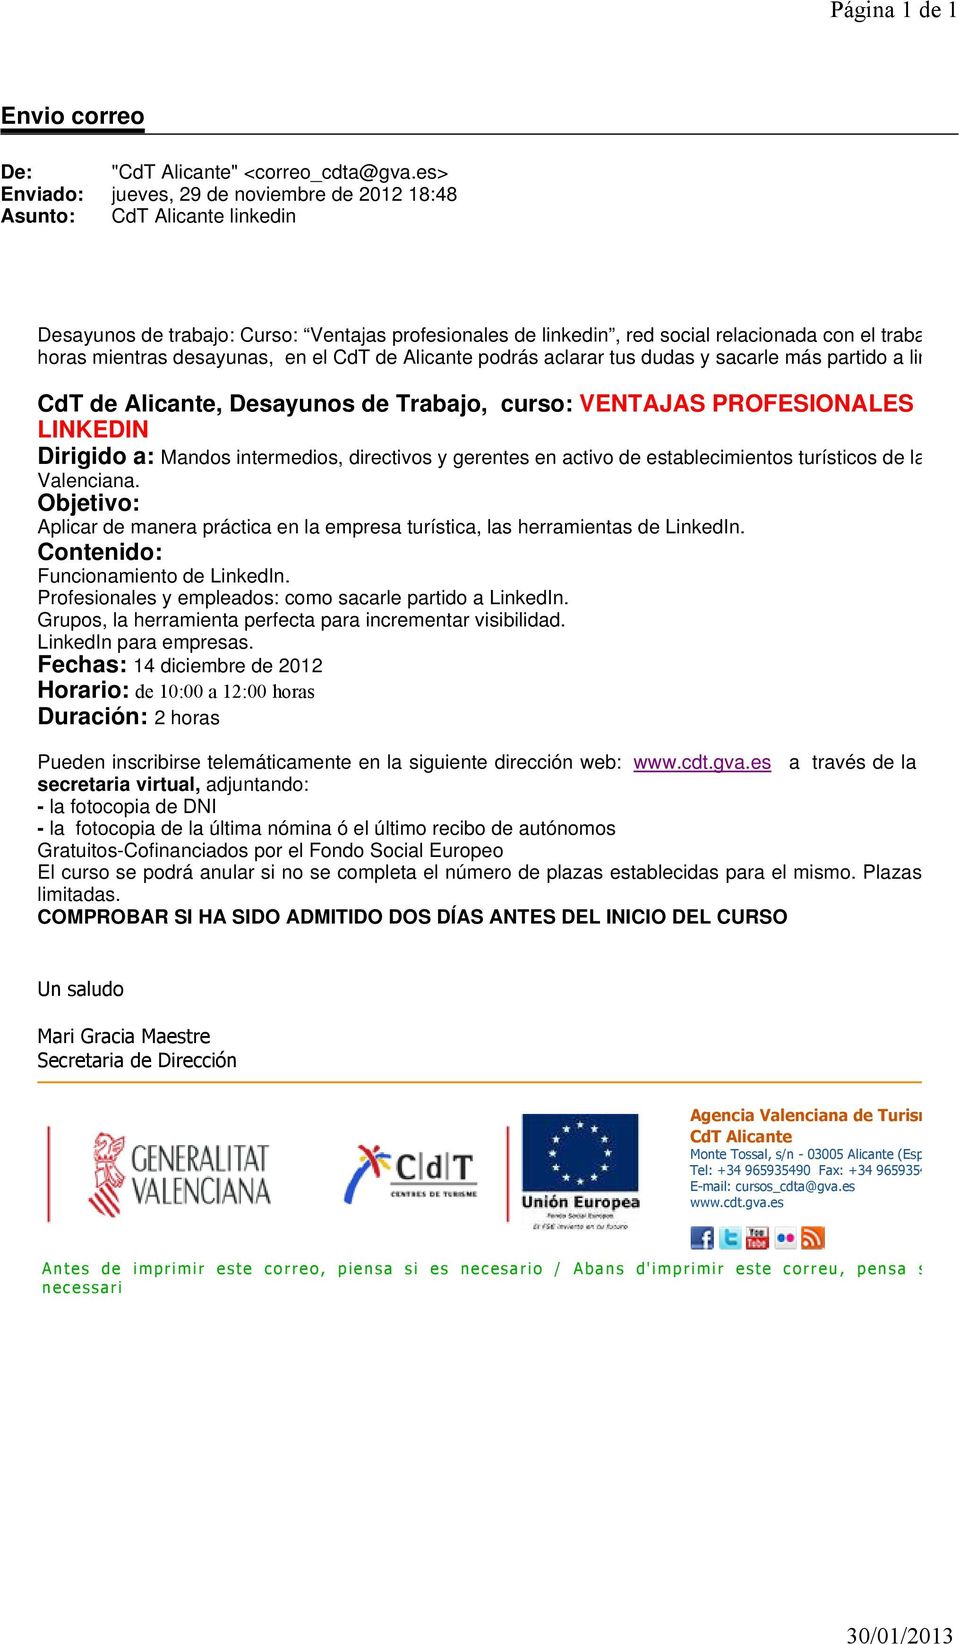 CdT de Alicante, Desayunos de Trabajo, curso: VENTAJAS PROFESIONALES DE LINKEDIN Dirigido a: Mandos intermedios, directivos y gerentes en activo de establecimientos turísticos de la Comunidad